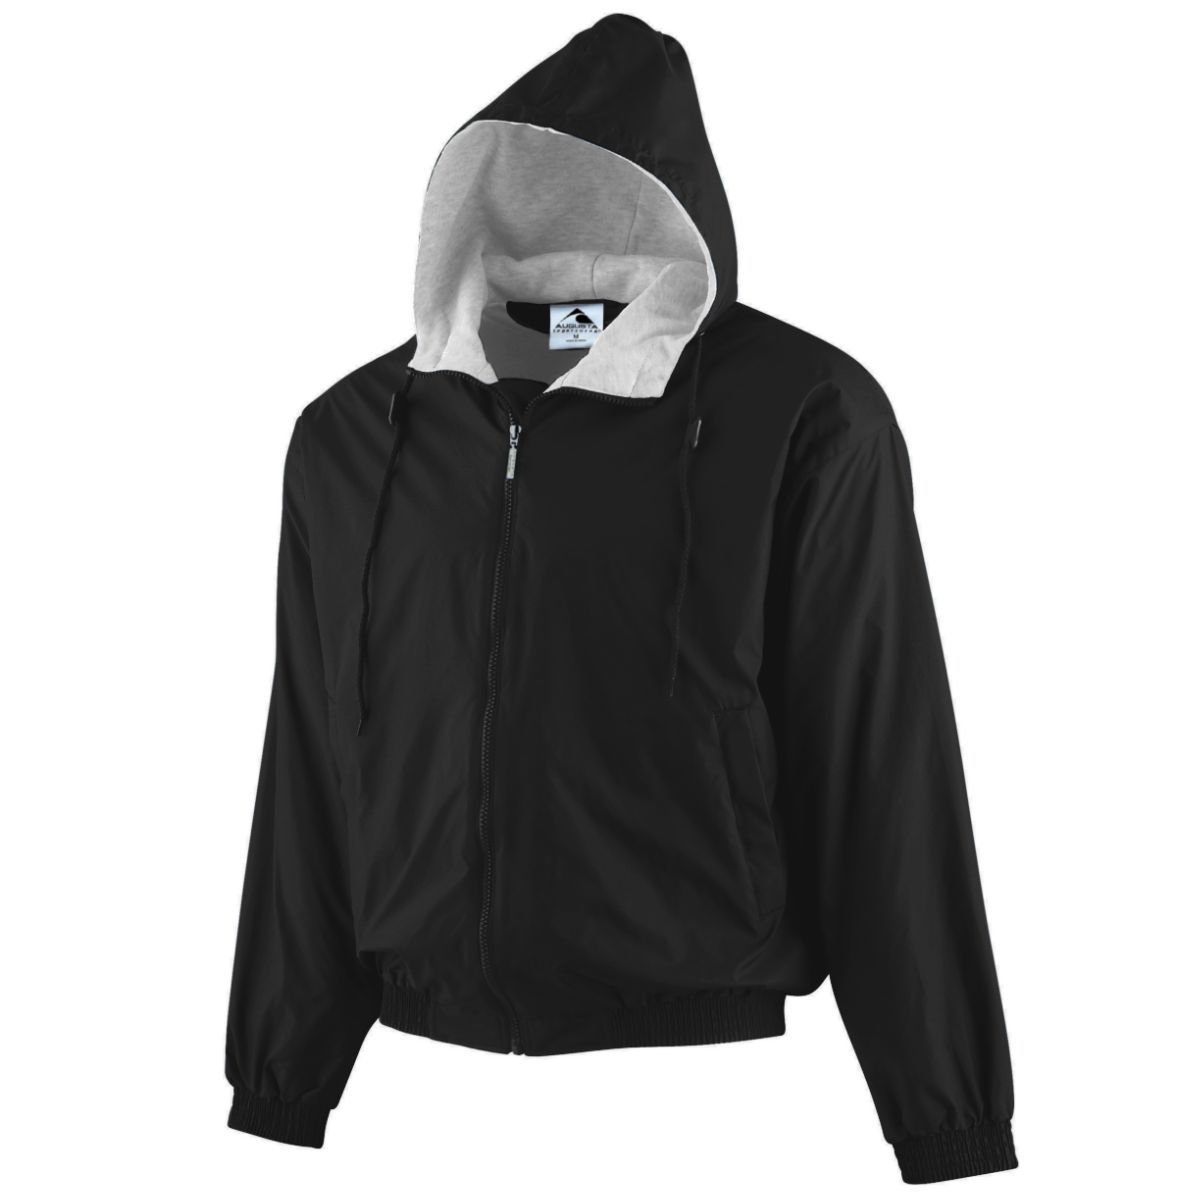 Augusta Sportswear Youth Hooded Taffeta Jacket/Fleece Lined